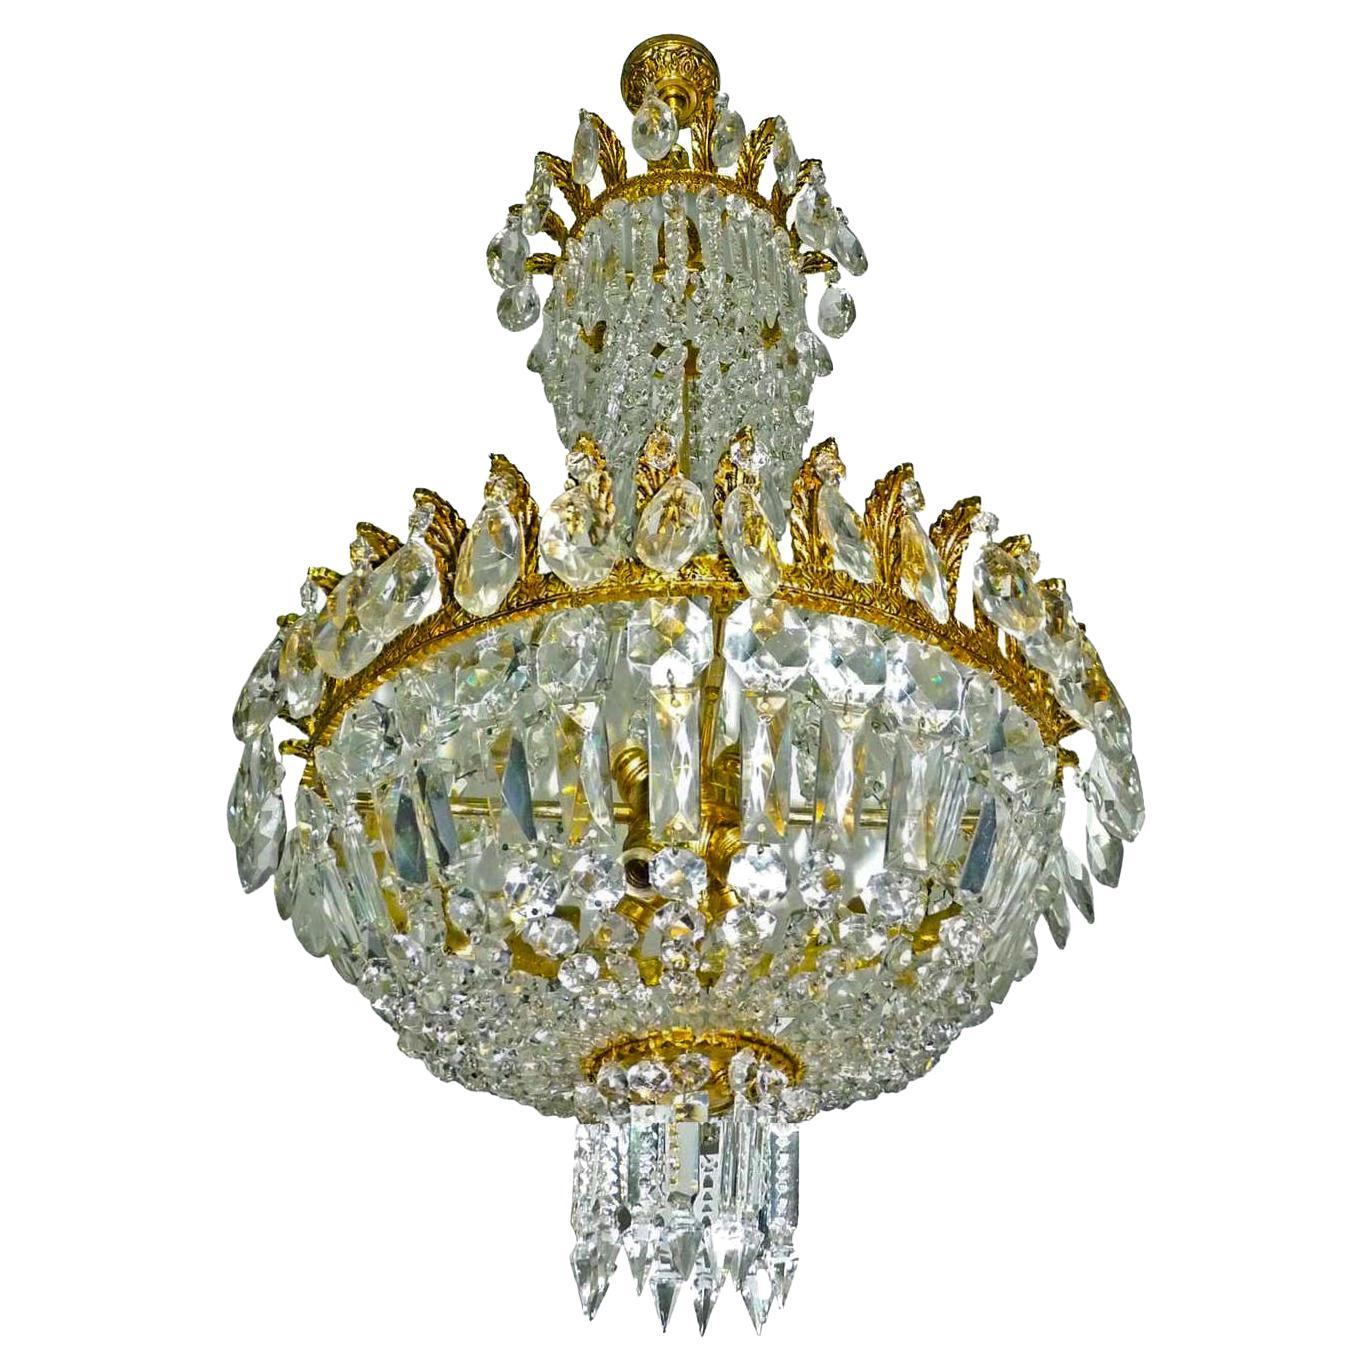 Kronleuchter aus vergoldeter Bronze und Kristall im Empire-Stil, Louis XVI.-Stil, Hollywood Regency